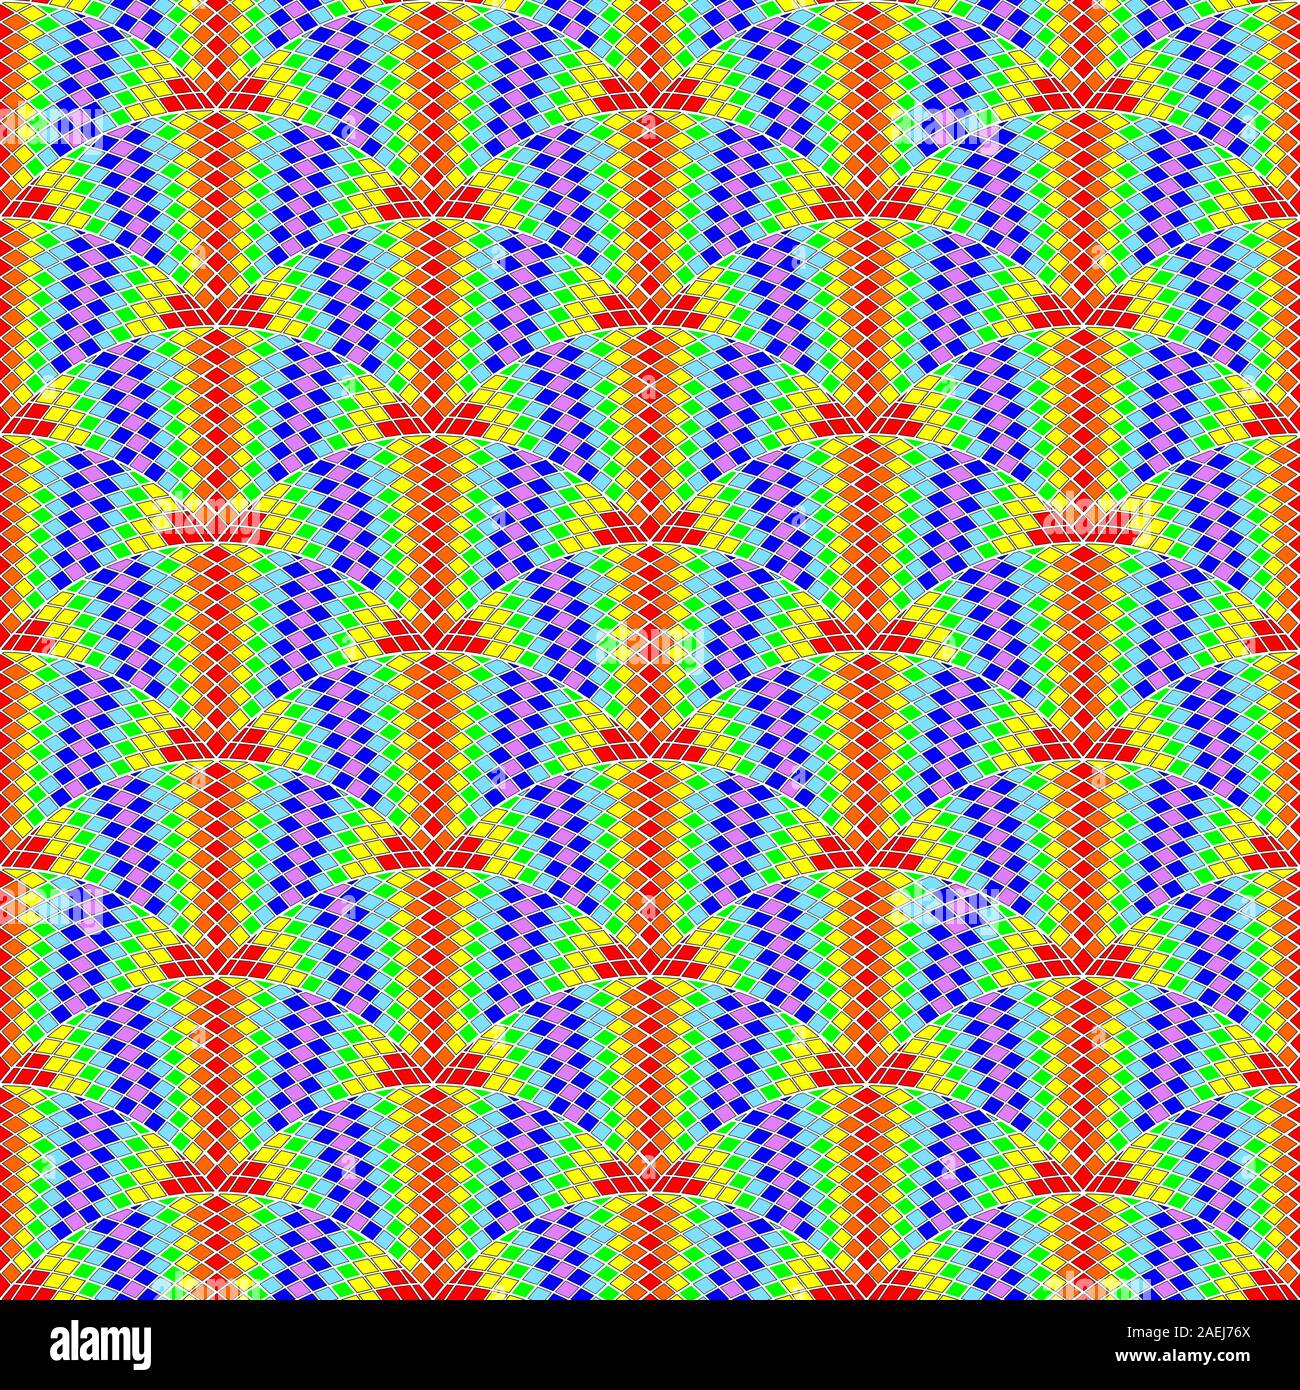 Rainbow Mosaik aus kleinen Quadraten. Nahtlose Muster. Farbe Vector Illustration. Stock Vektor